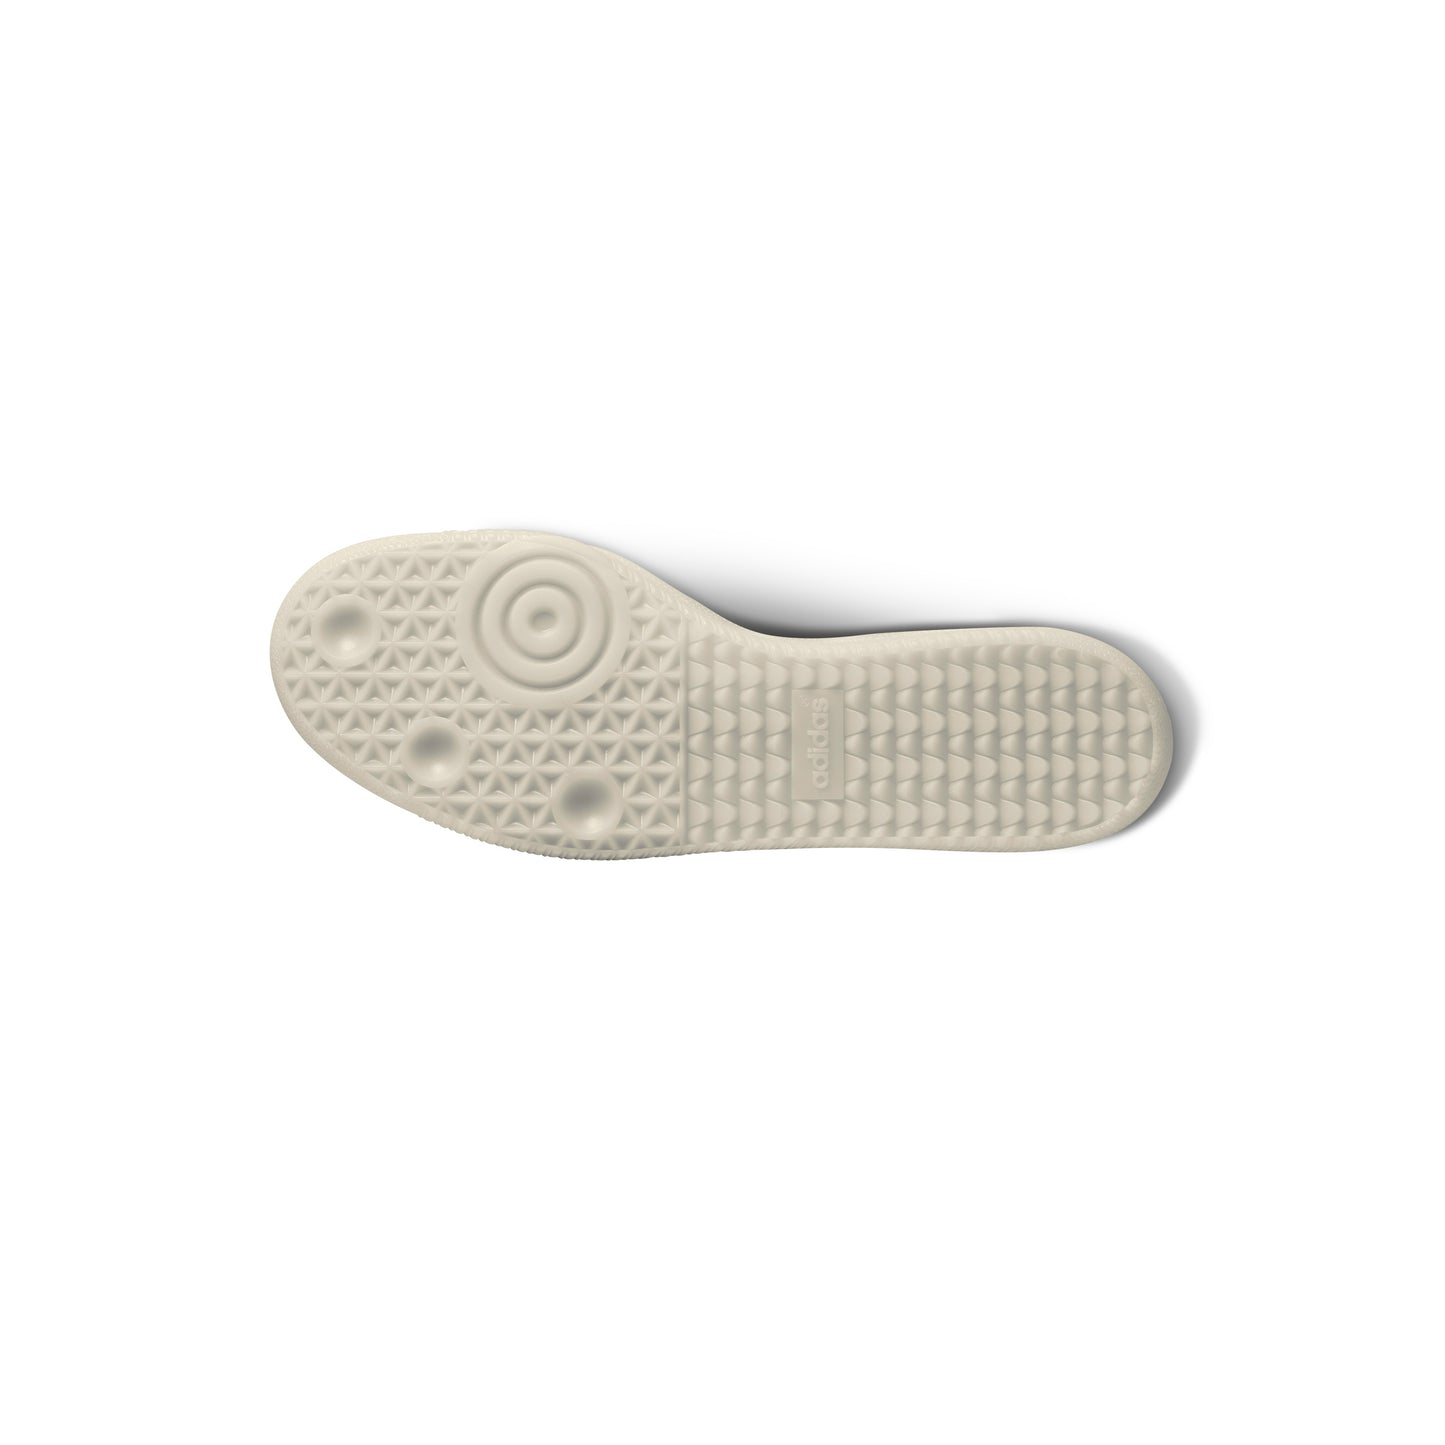 Adidas Samba ADV - (Jason Dill) Patent White Leather